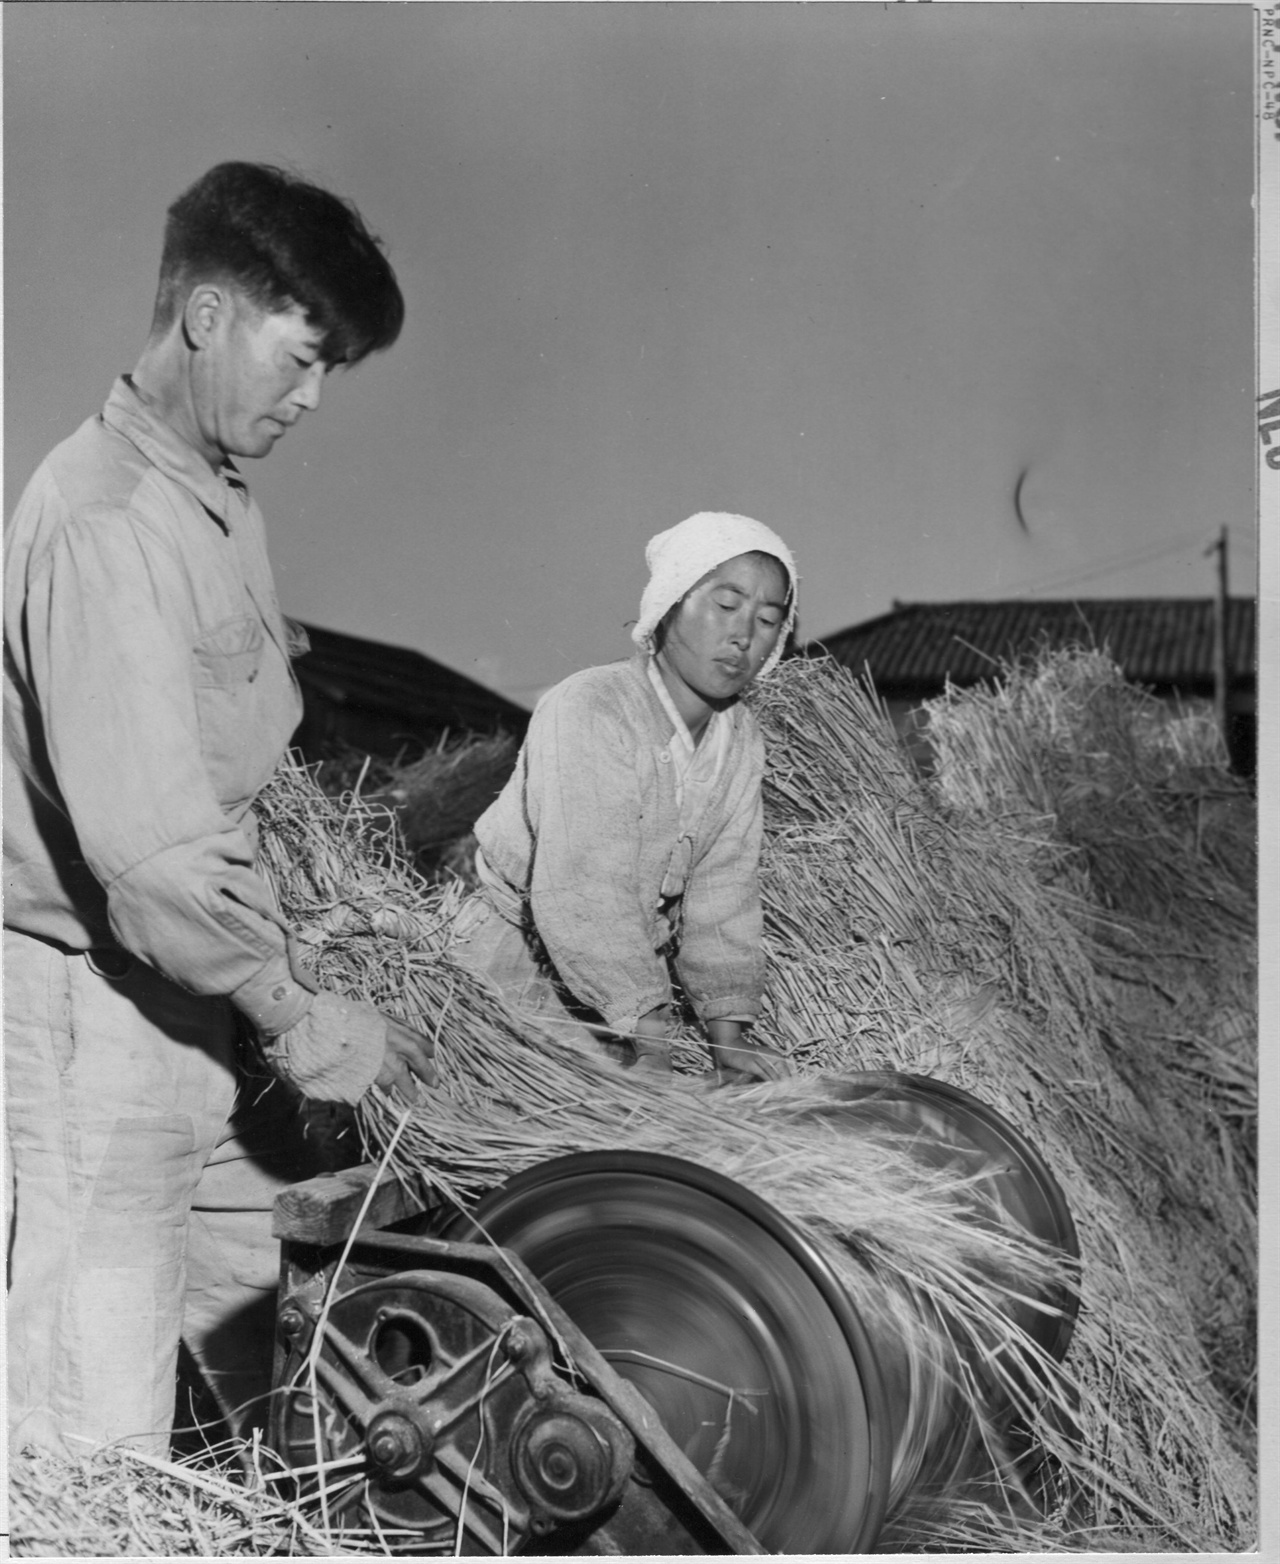 1950. 11. 8. 원산, 탈곡기로 추수를 하는 농사꾼 부부.